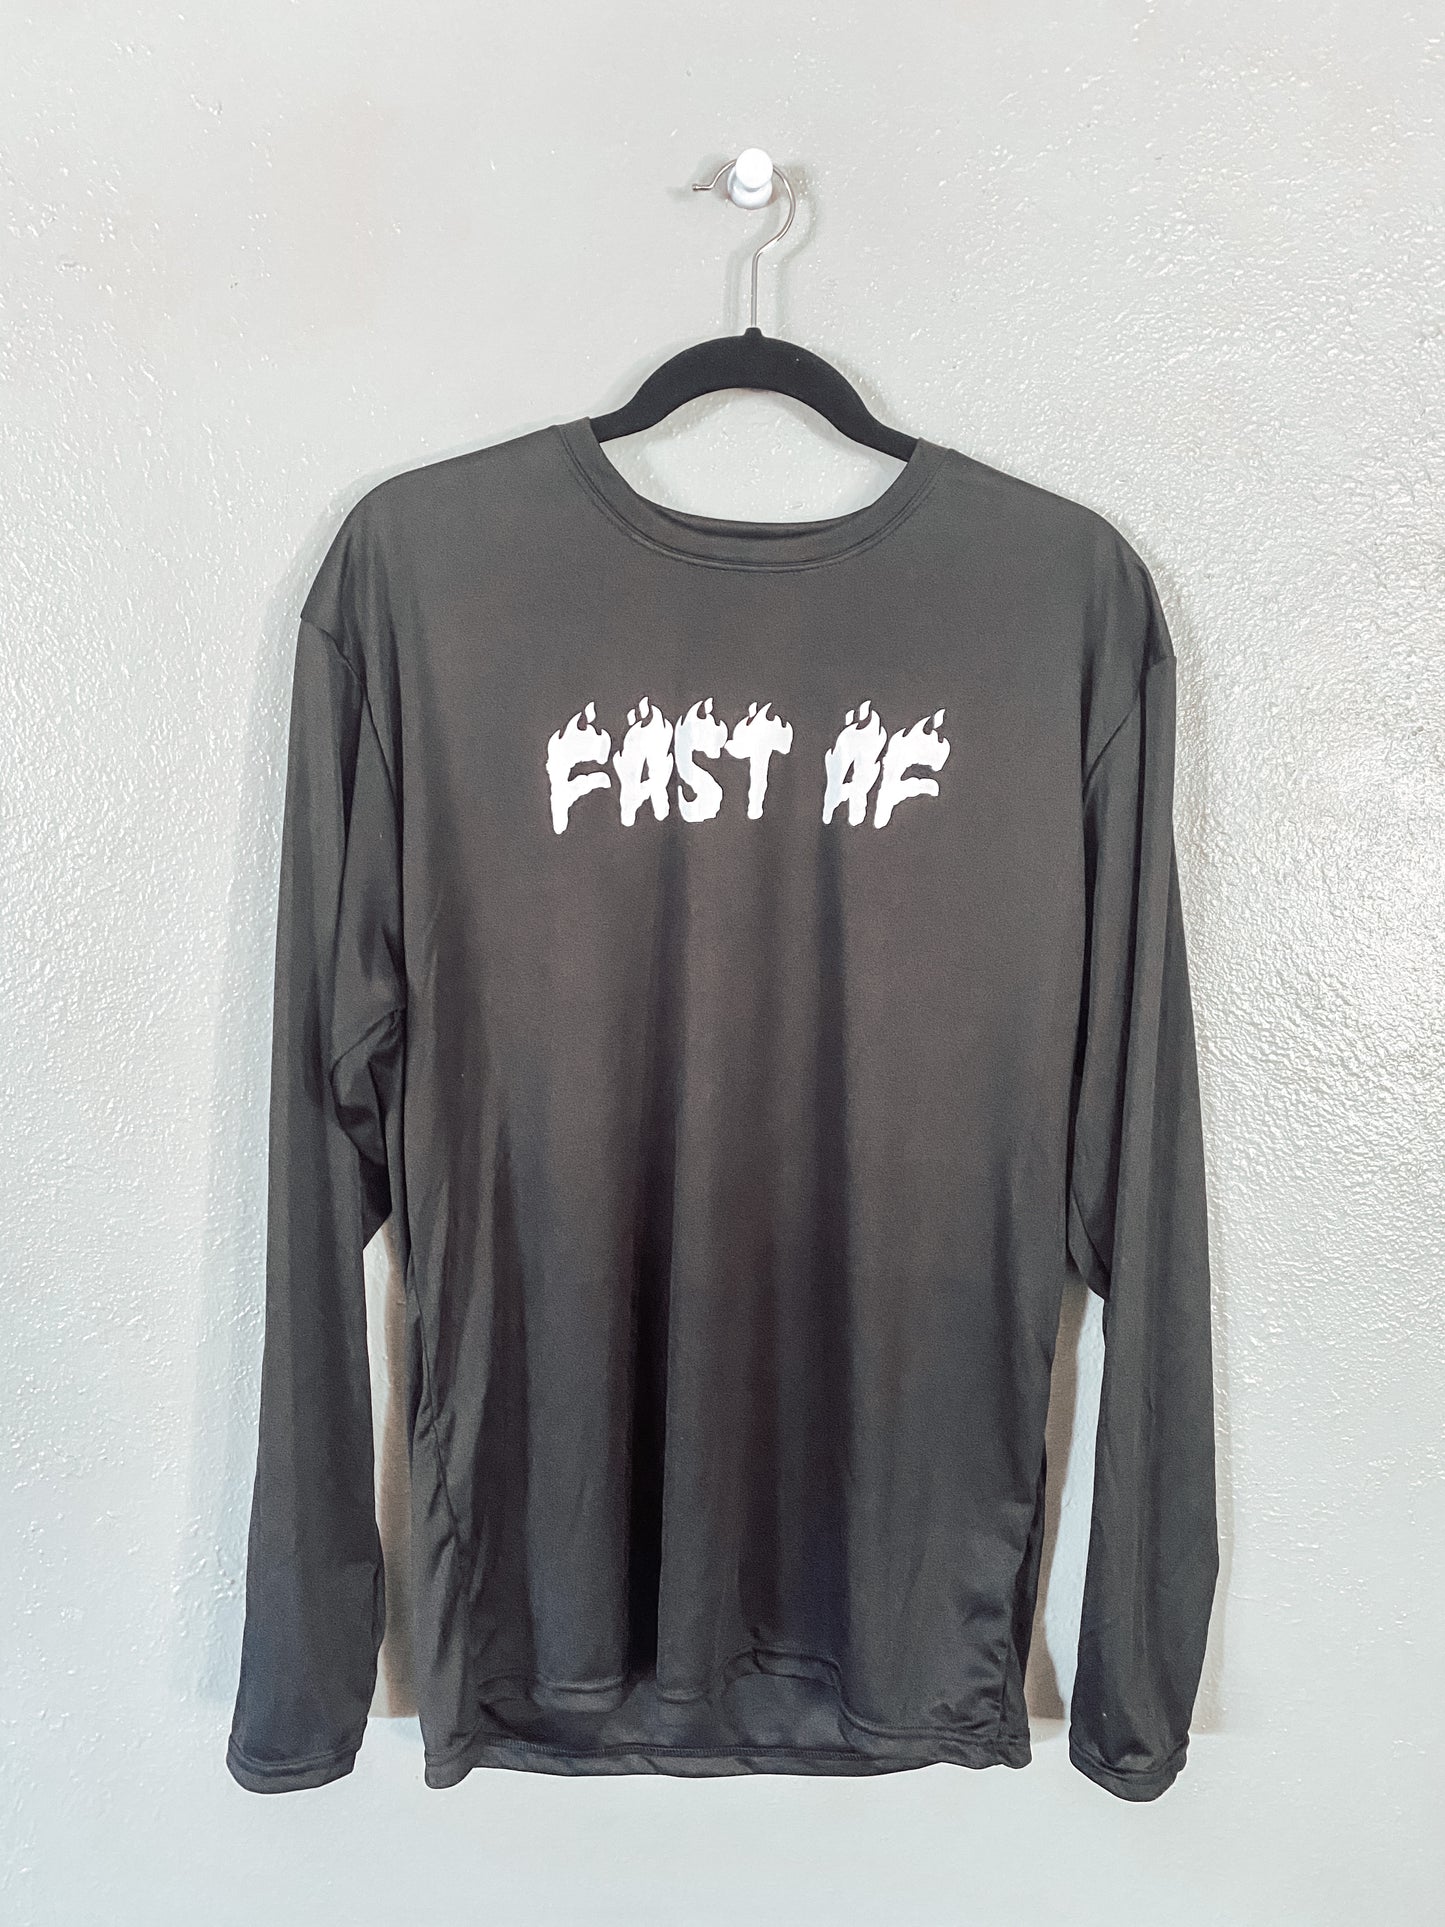 Fast AF [Jersey]